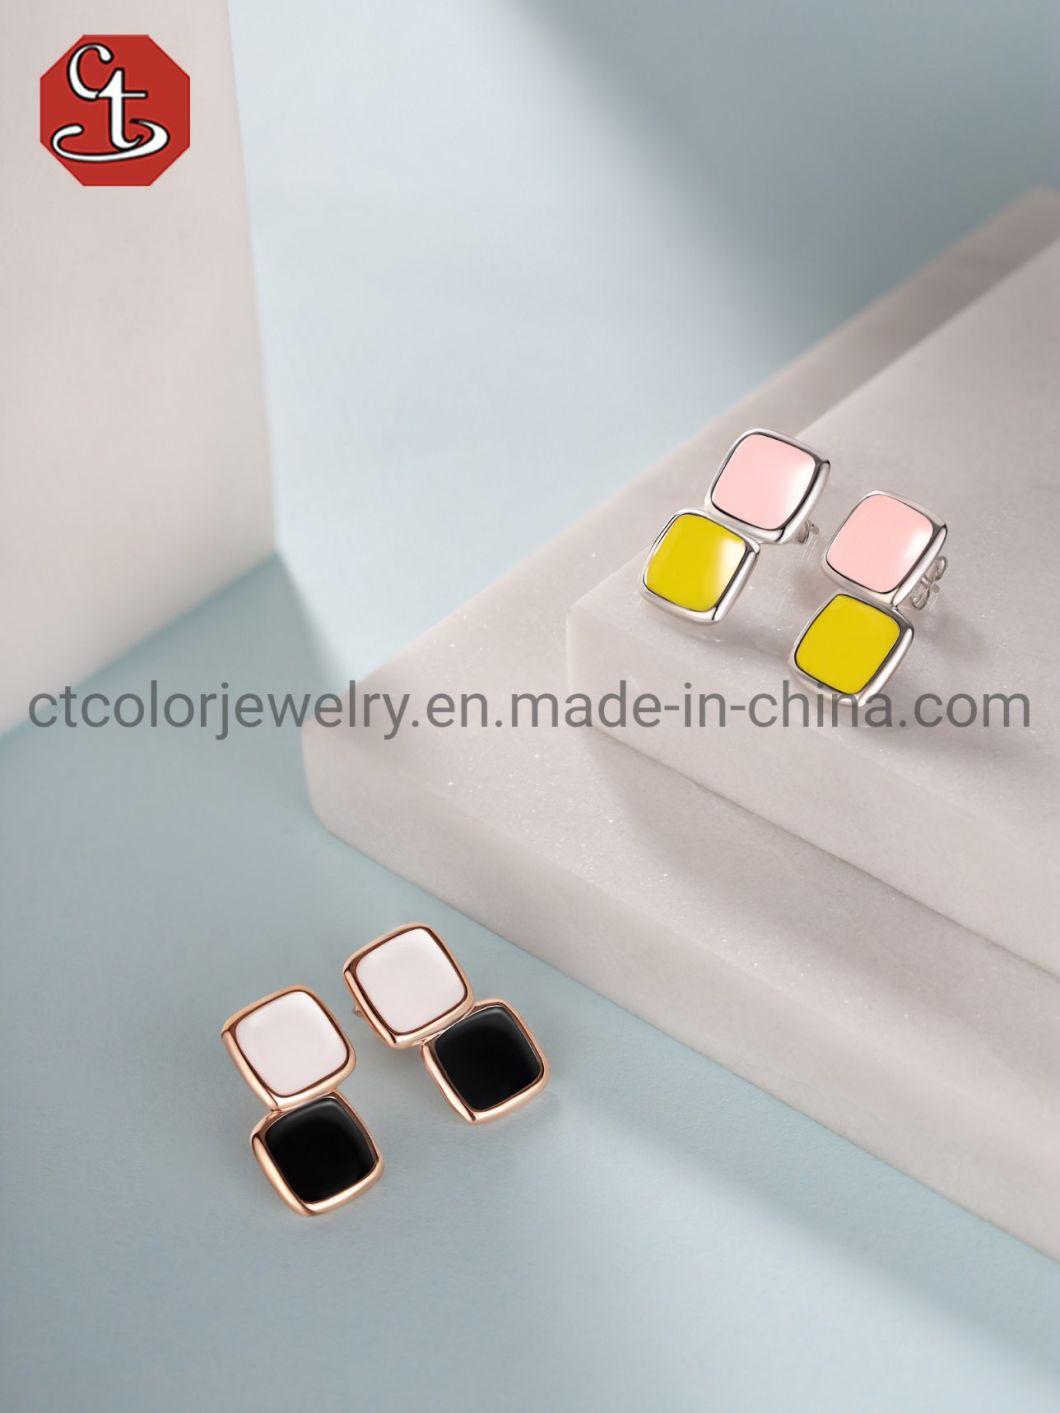 Custom Jewelry Color Enamel Fashion Jewelry 925 Sterling Silver Jewelry Earrings For Women